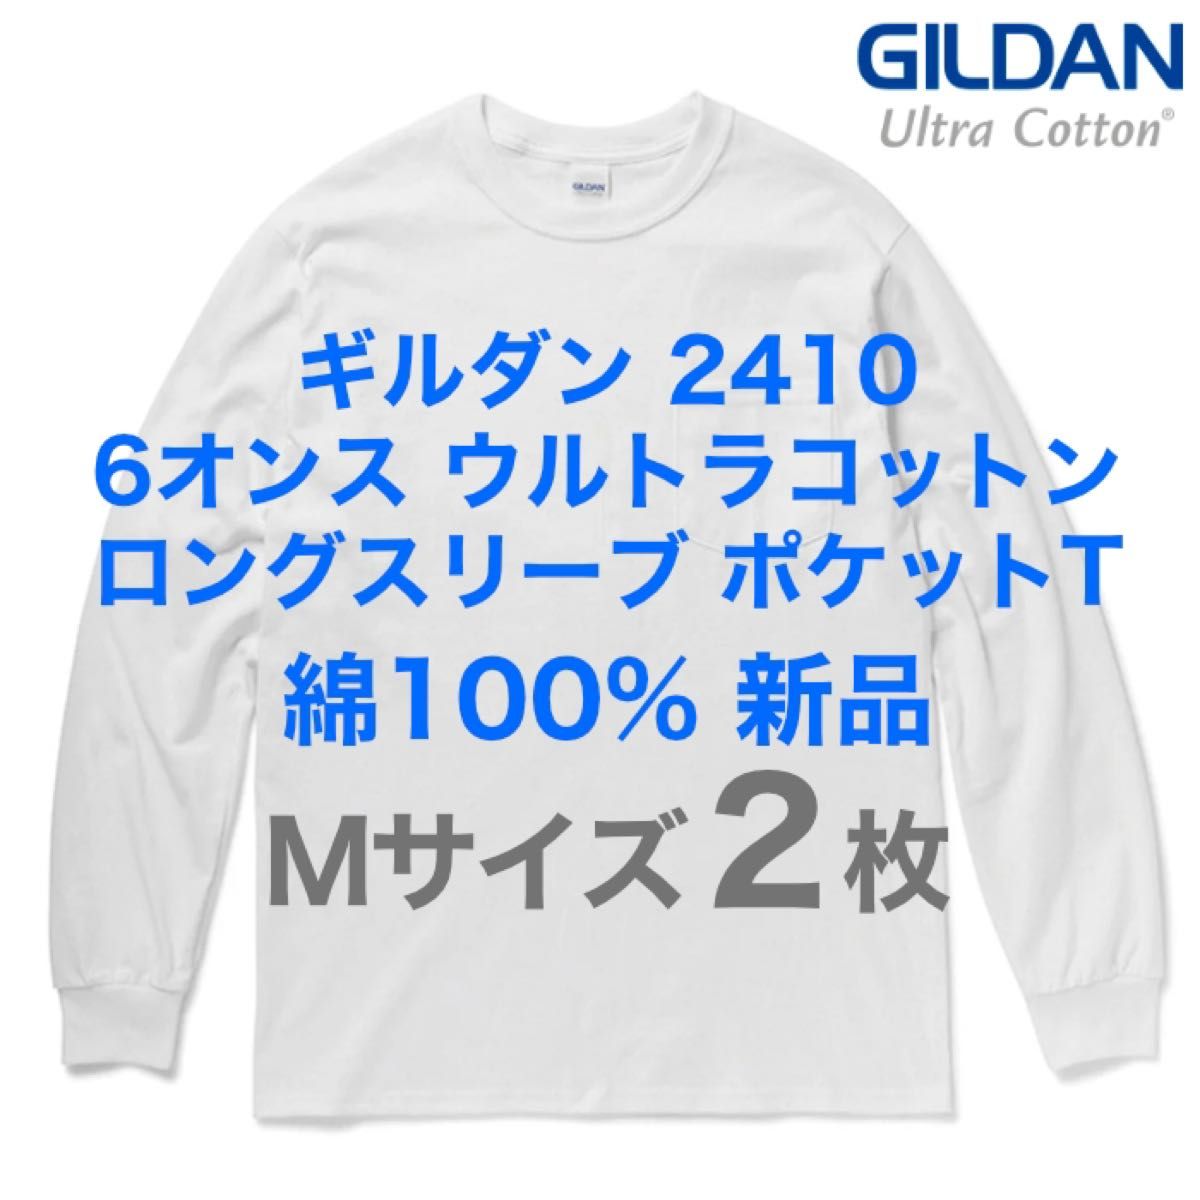 新品未使用2枚 GILDAN2410 6オンス ポケット付きロングスリーブTシャツコットン100% Mサイズ ギルダン ロンT